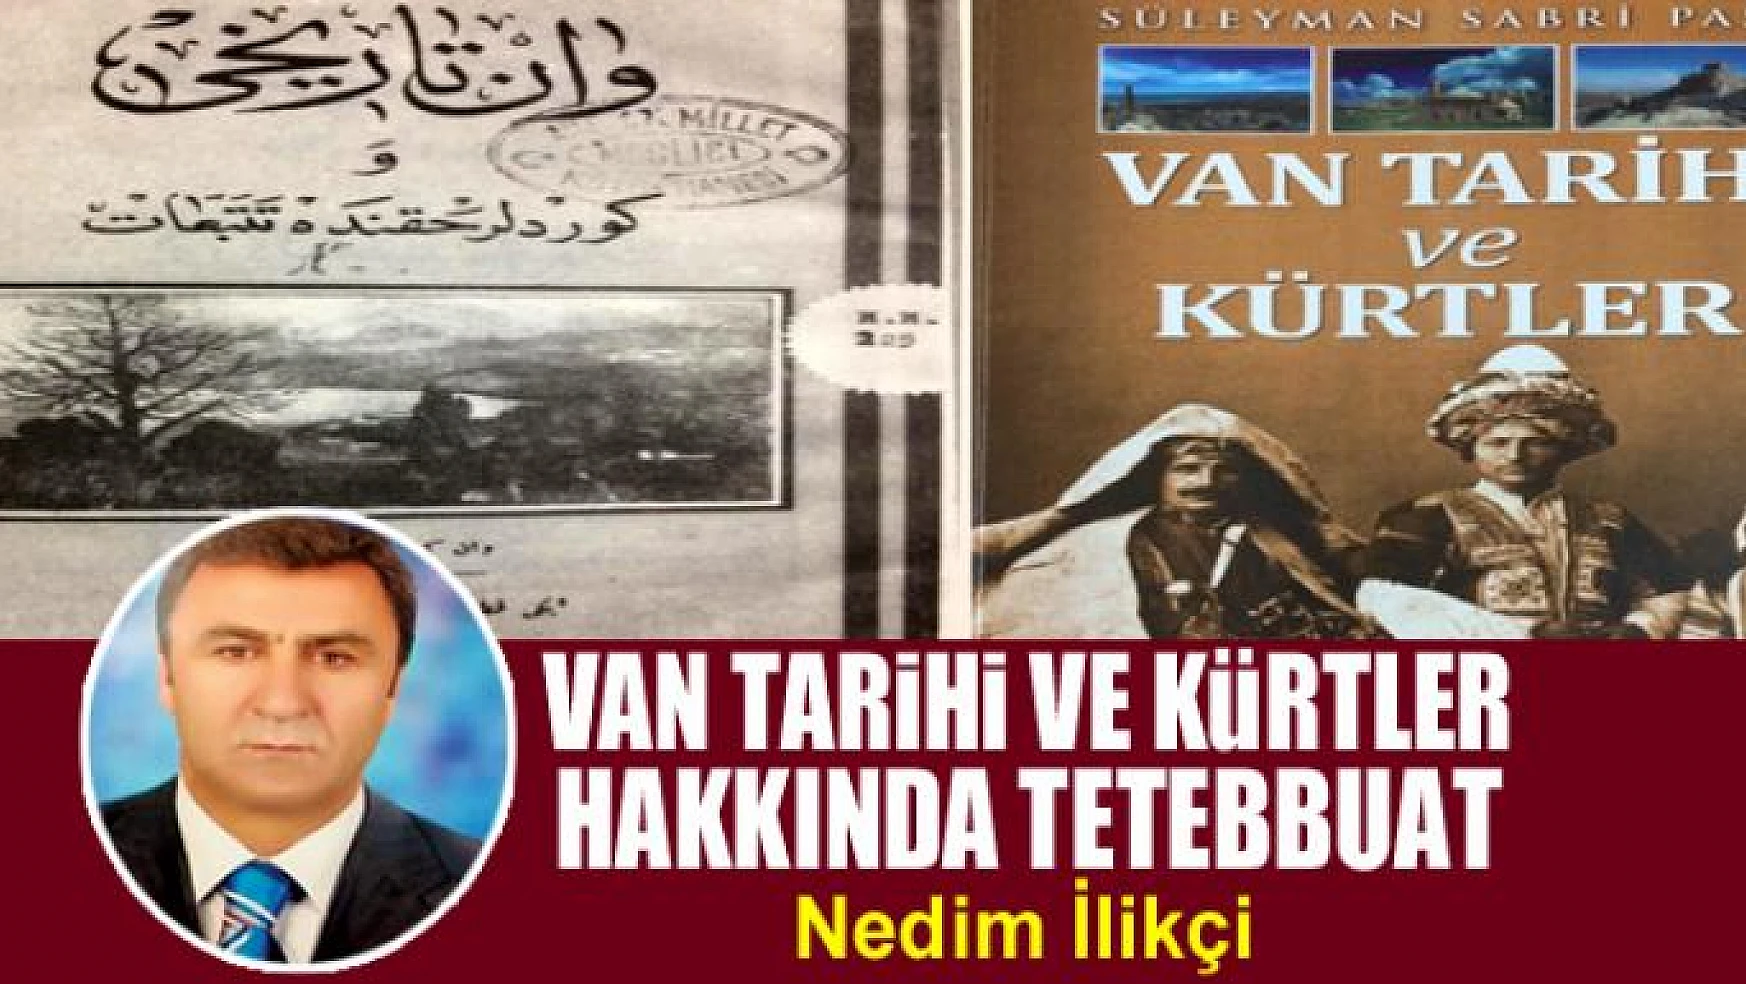 Van Tarihi ve Kürtler Hakkında Tetebbuat